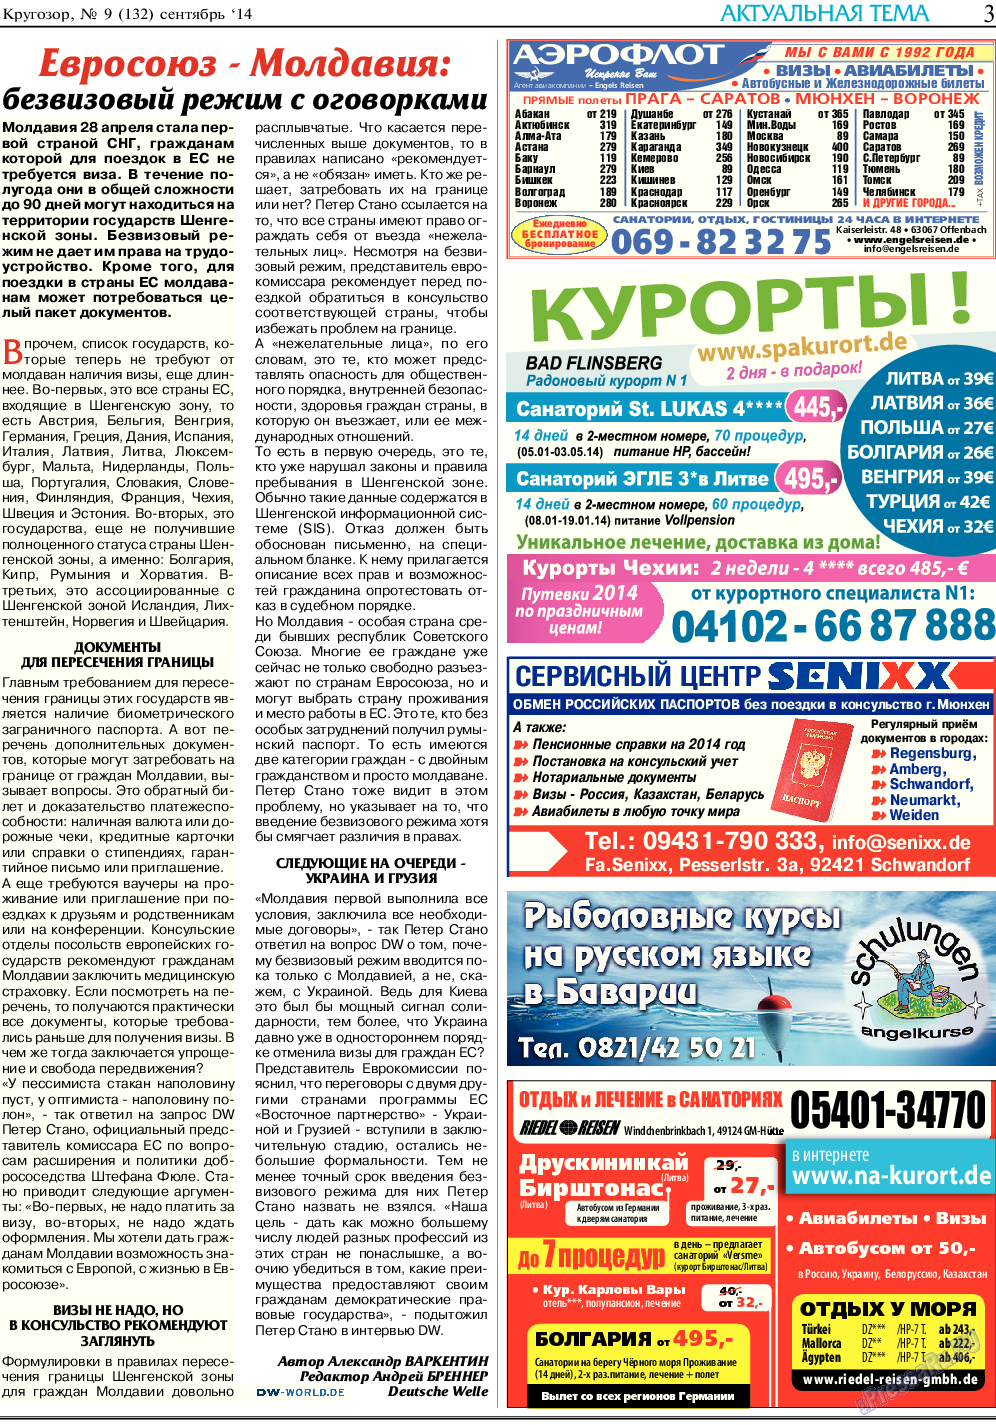 Кругозор, газета. 2014 №9 стр.3